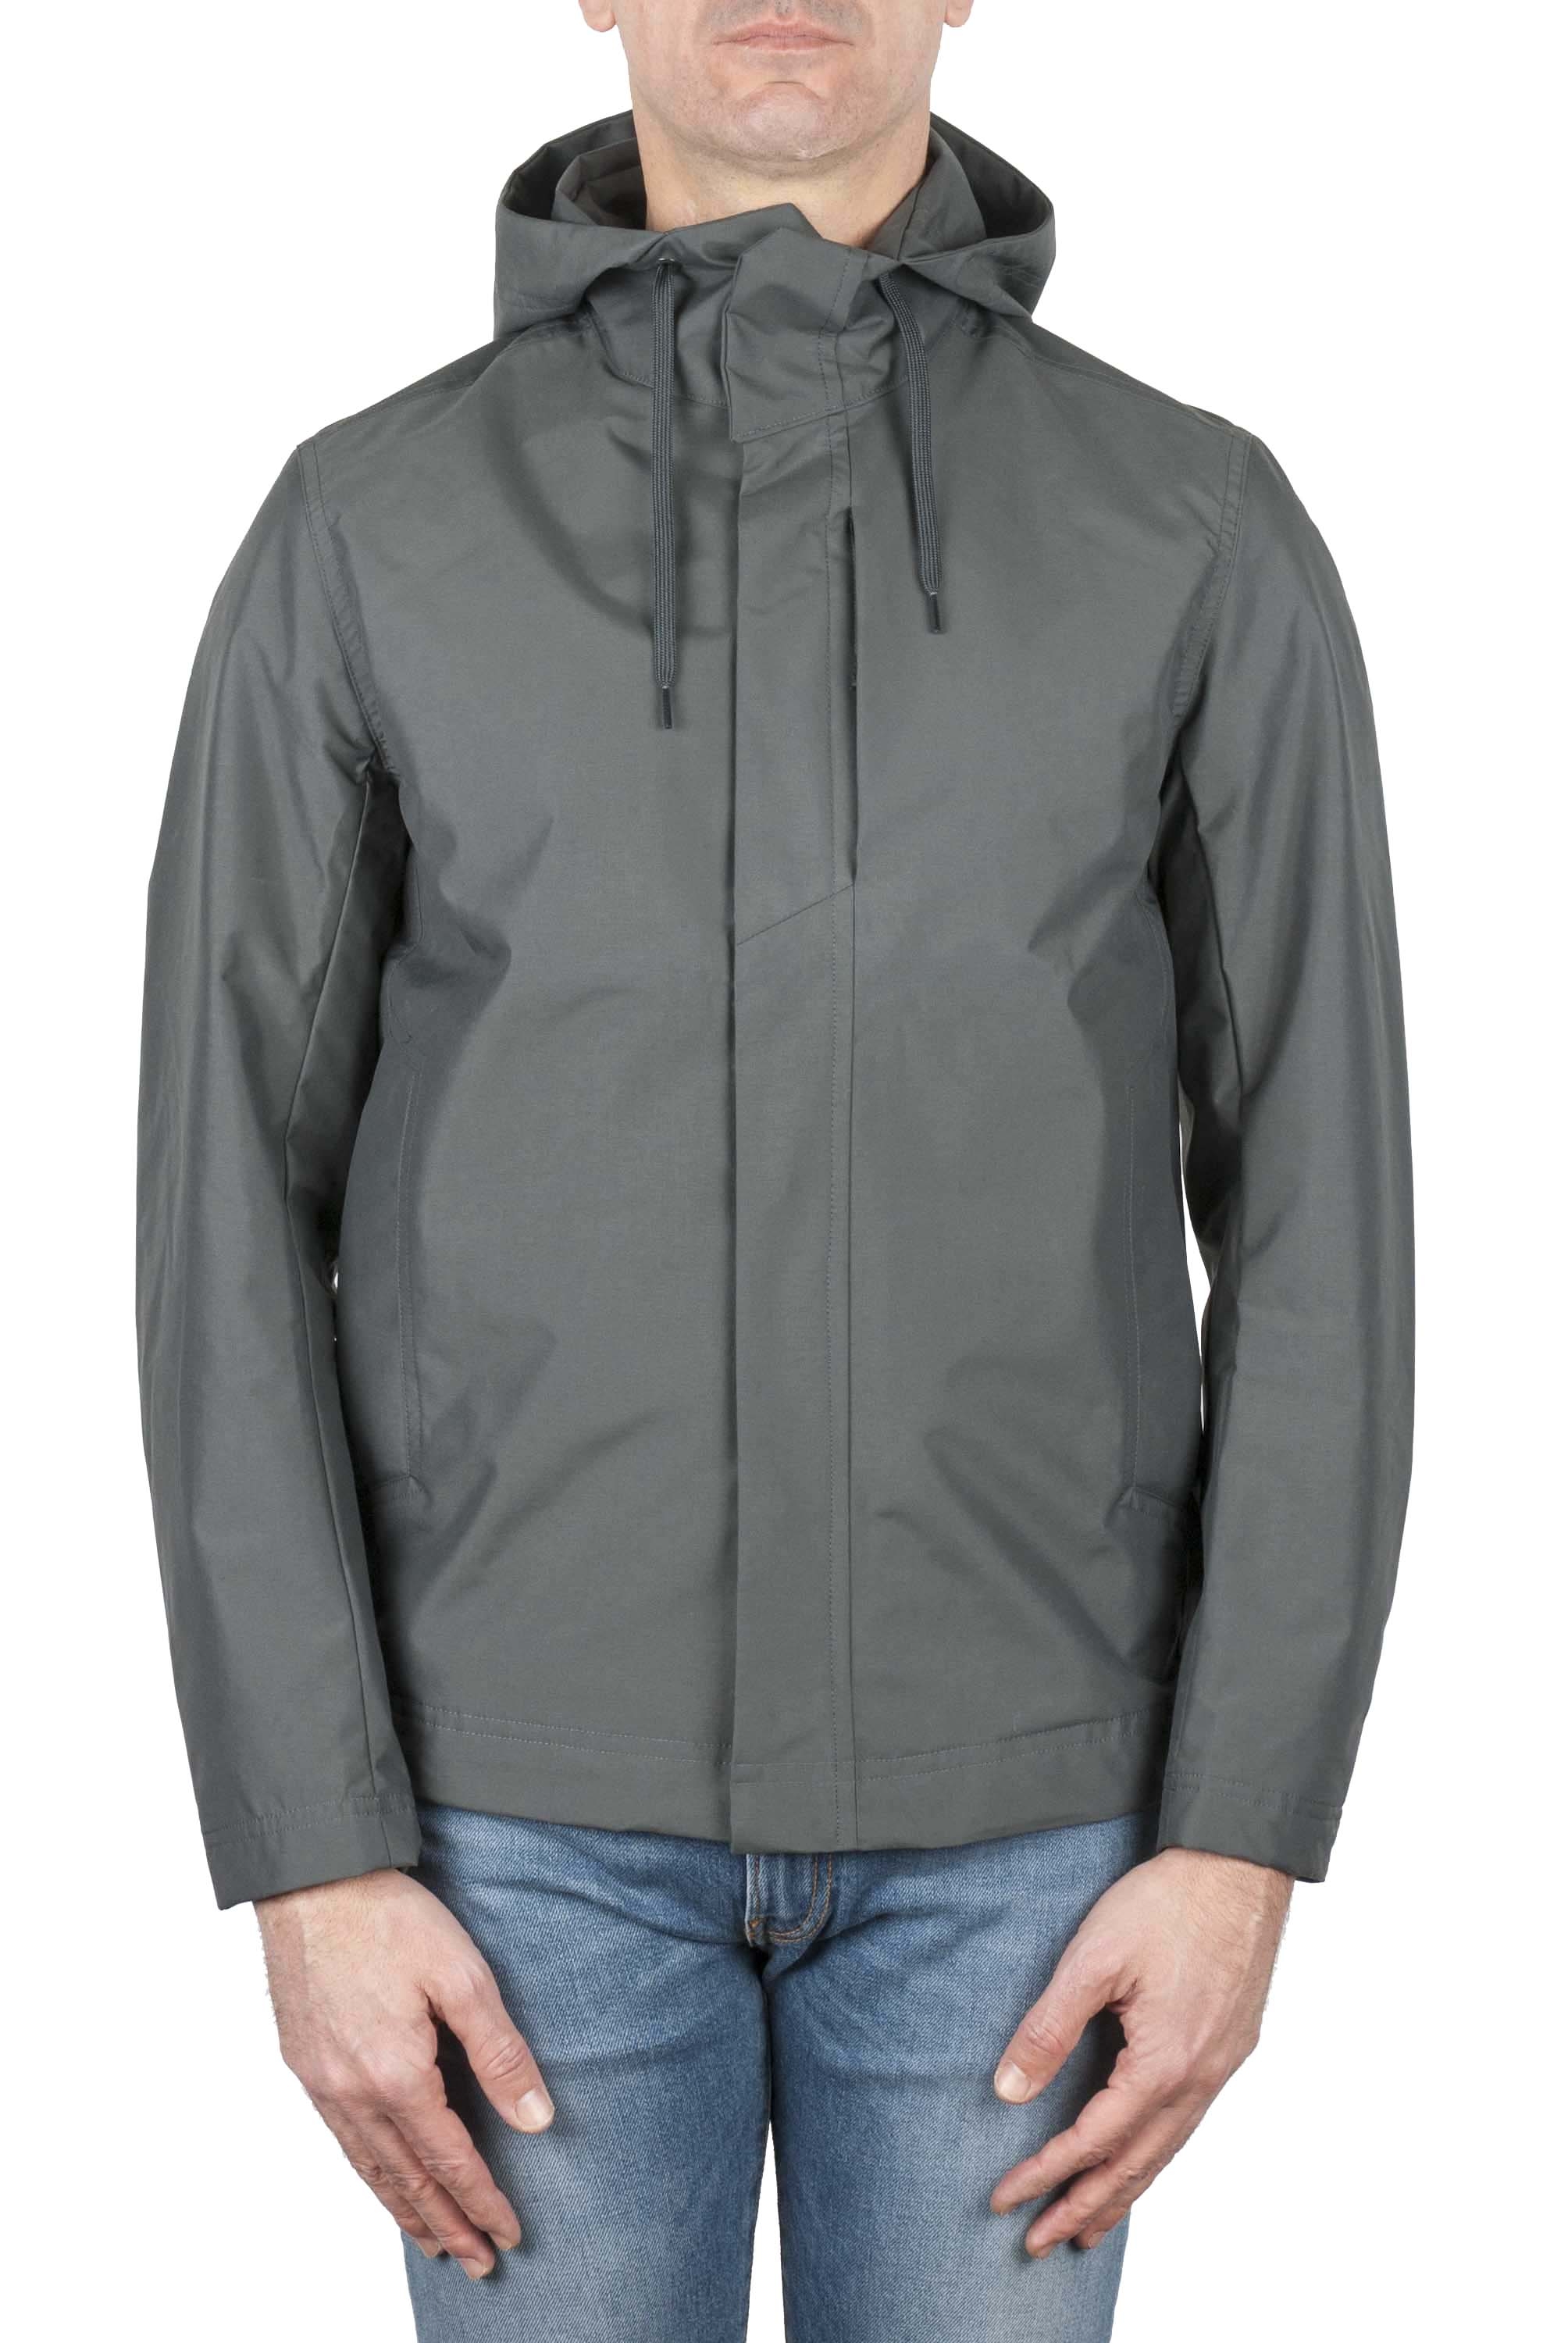 SBU 01559_19AW Technical waterproof hooded windbreaker jacket grey 01